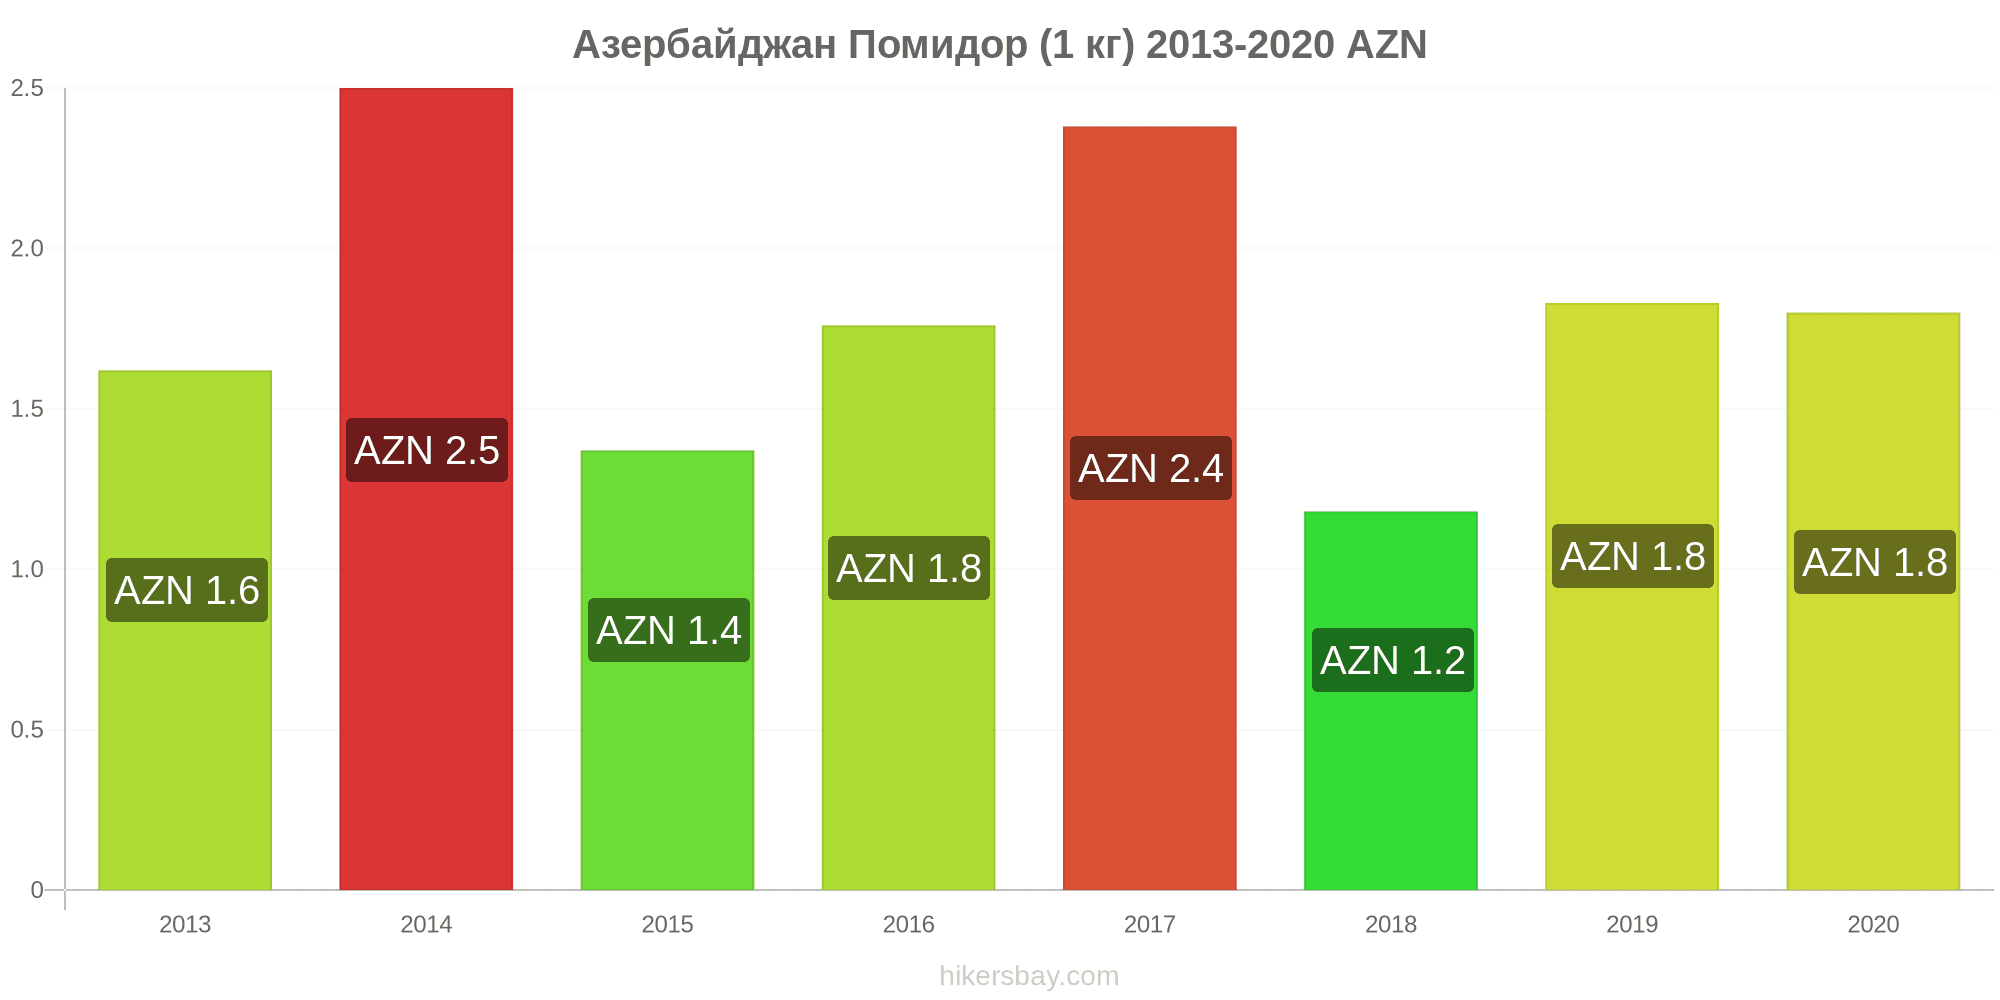 Цены в Азербайджан Декабрь 2021 цены в ресторанах, продукты питания и  напитки, проезд, топливо, апартаменты, гостиницы, супермаркет, одежда,  валюта